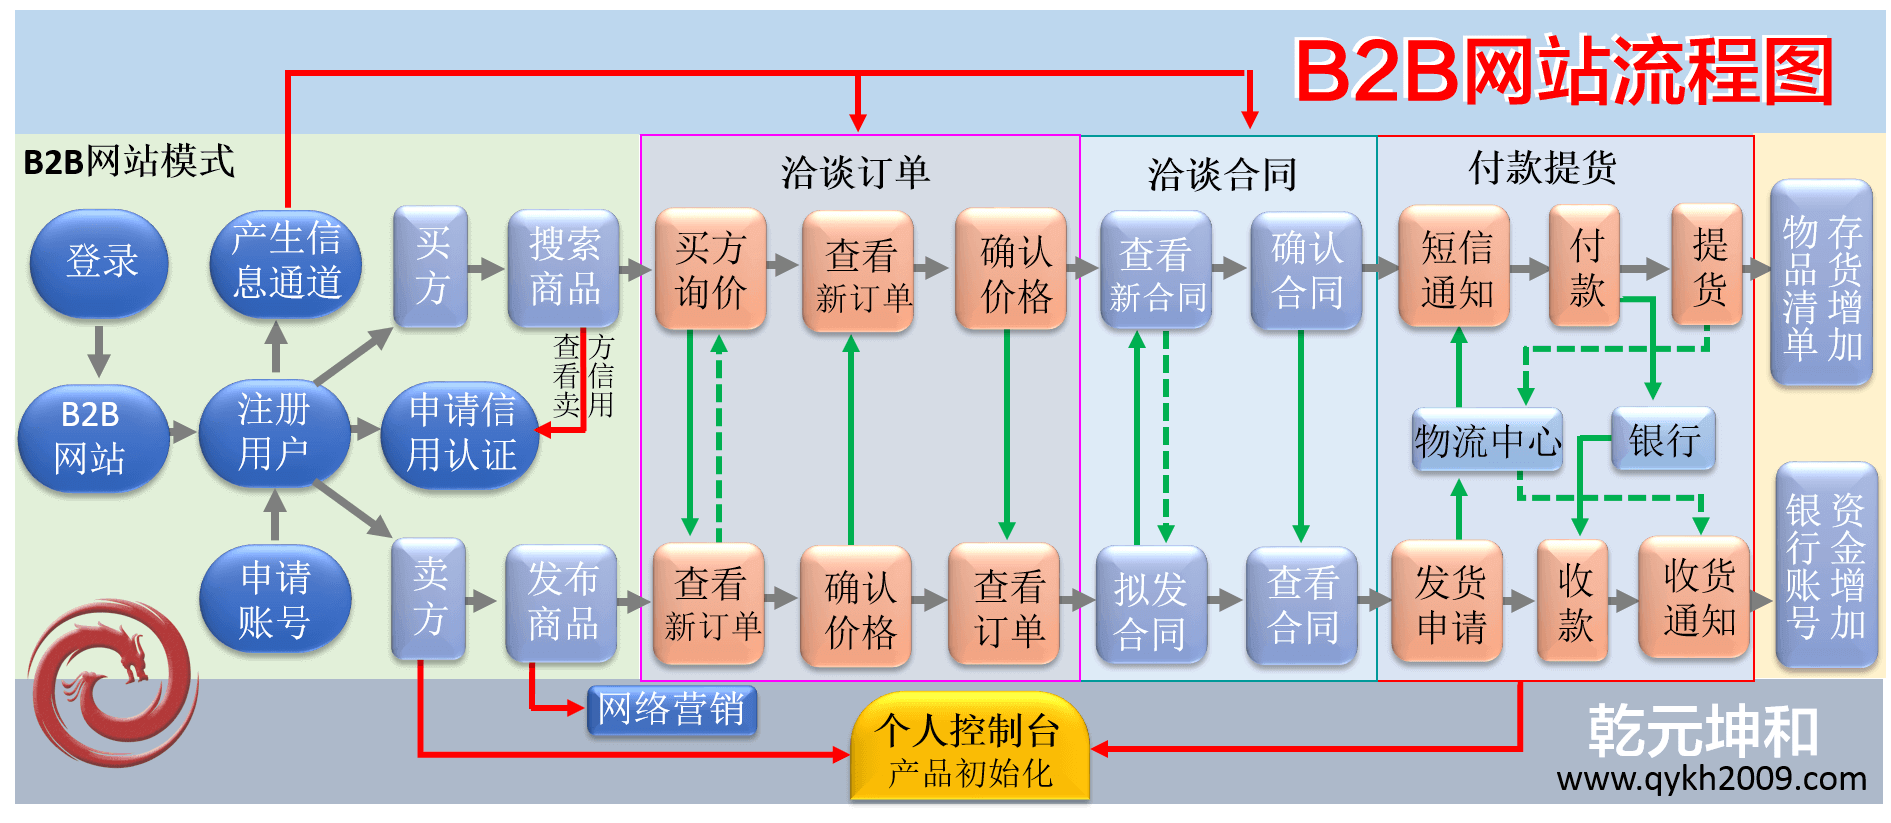 B2B系统流程图